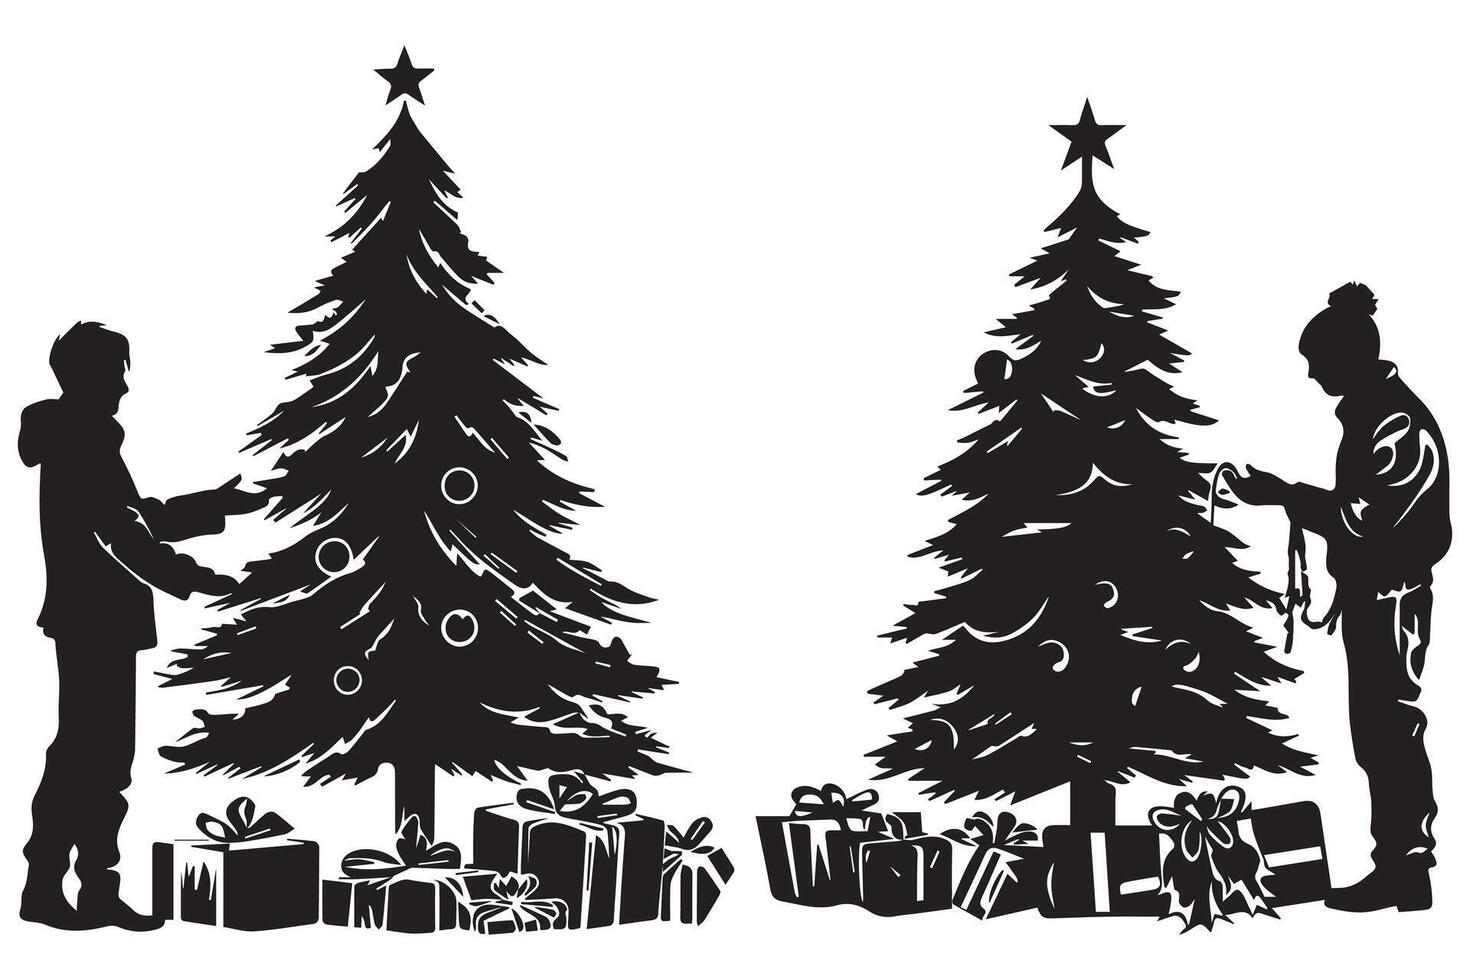 Navidad árbol con regalos silueta diseño aislado vector